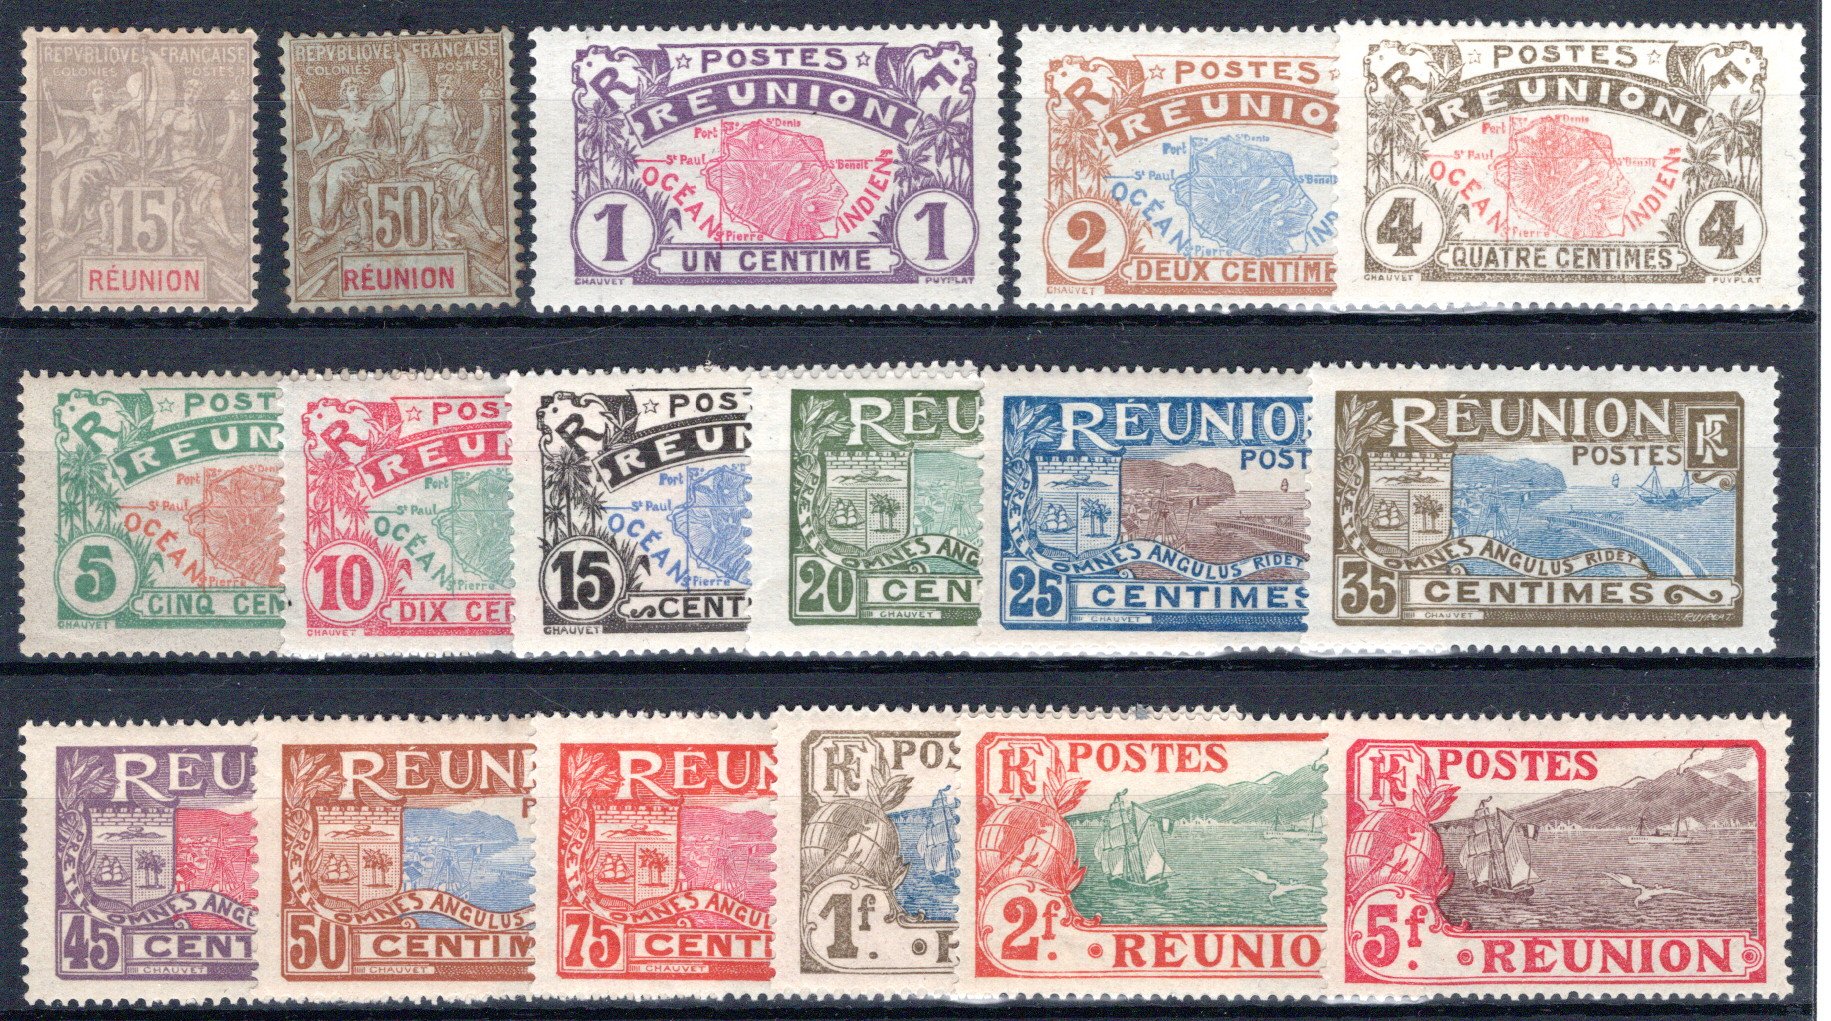 Lot 345 - FRANCE & COLONIES Reunión -  Georg Bühler Briefmarken Auktionen GmbH Georg Bühler 336 auction